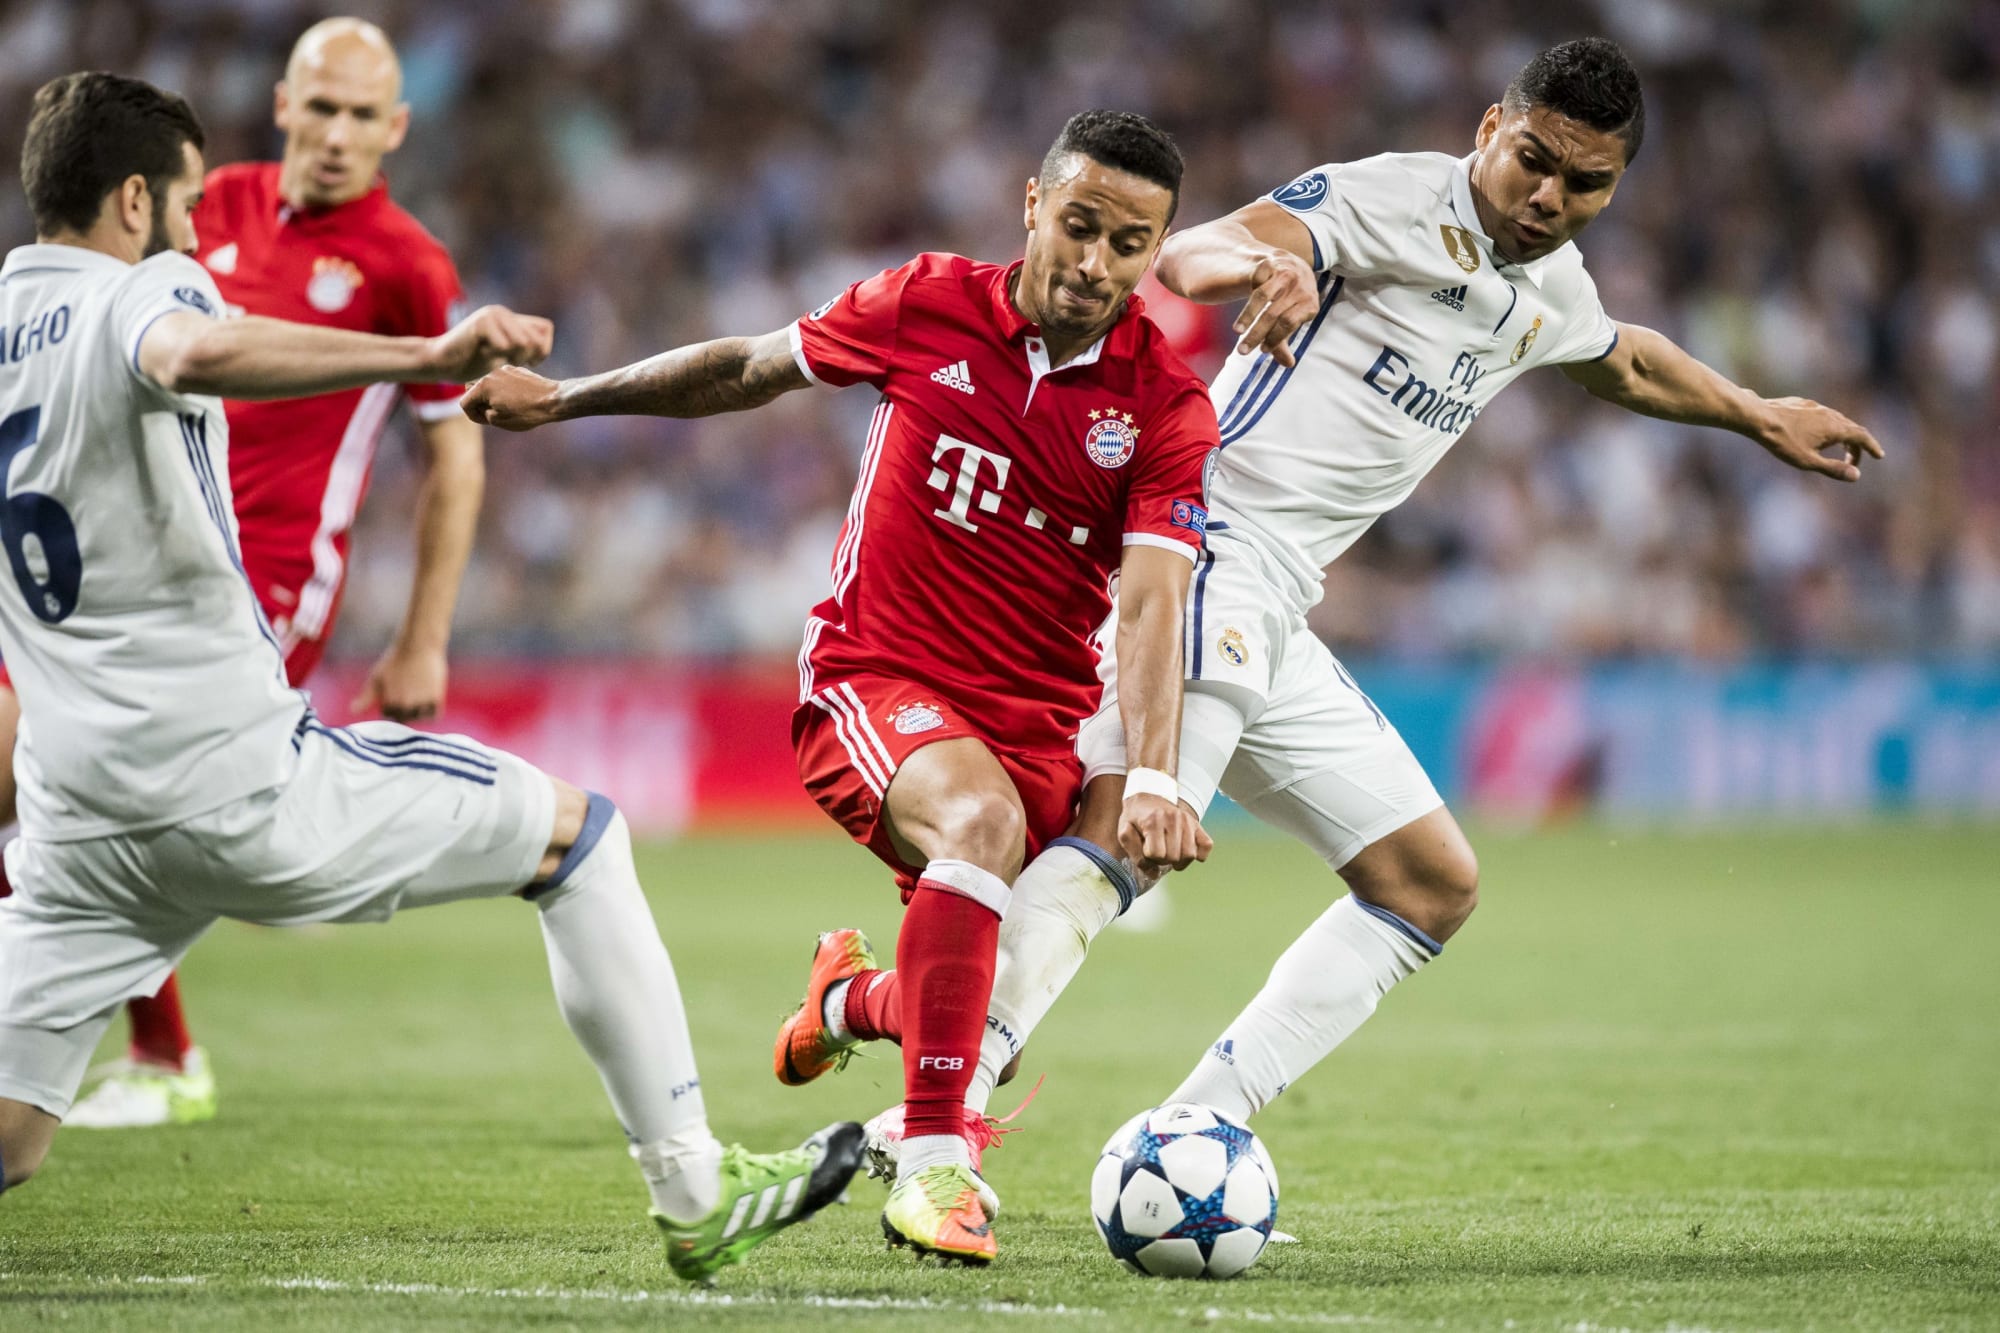 Bayern Munich vs Real Madrid: Key battles to watch